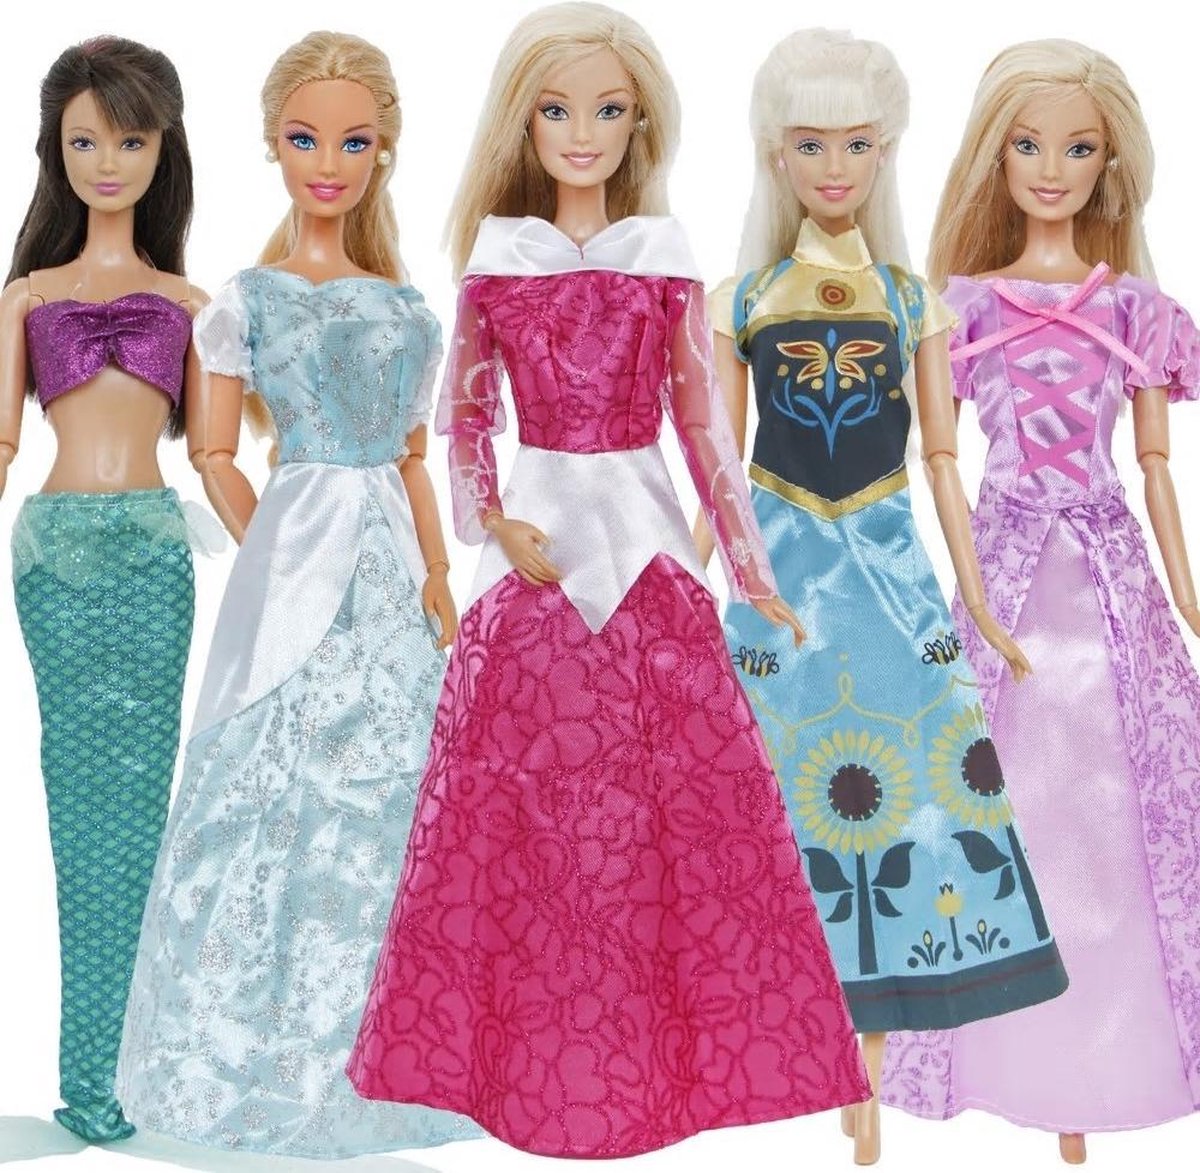 graven Antecedent luchthaven 5x Prinsessen jurk voor modepoppen - past op barbie | bol.com